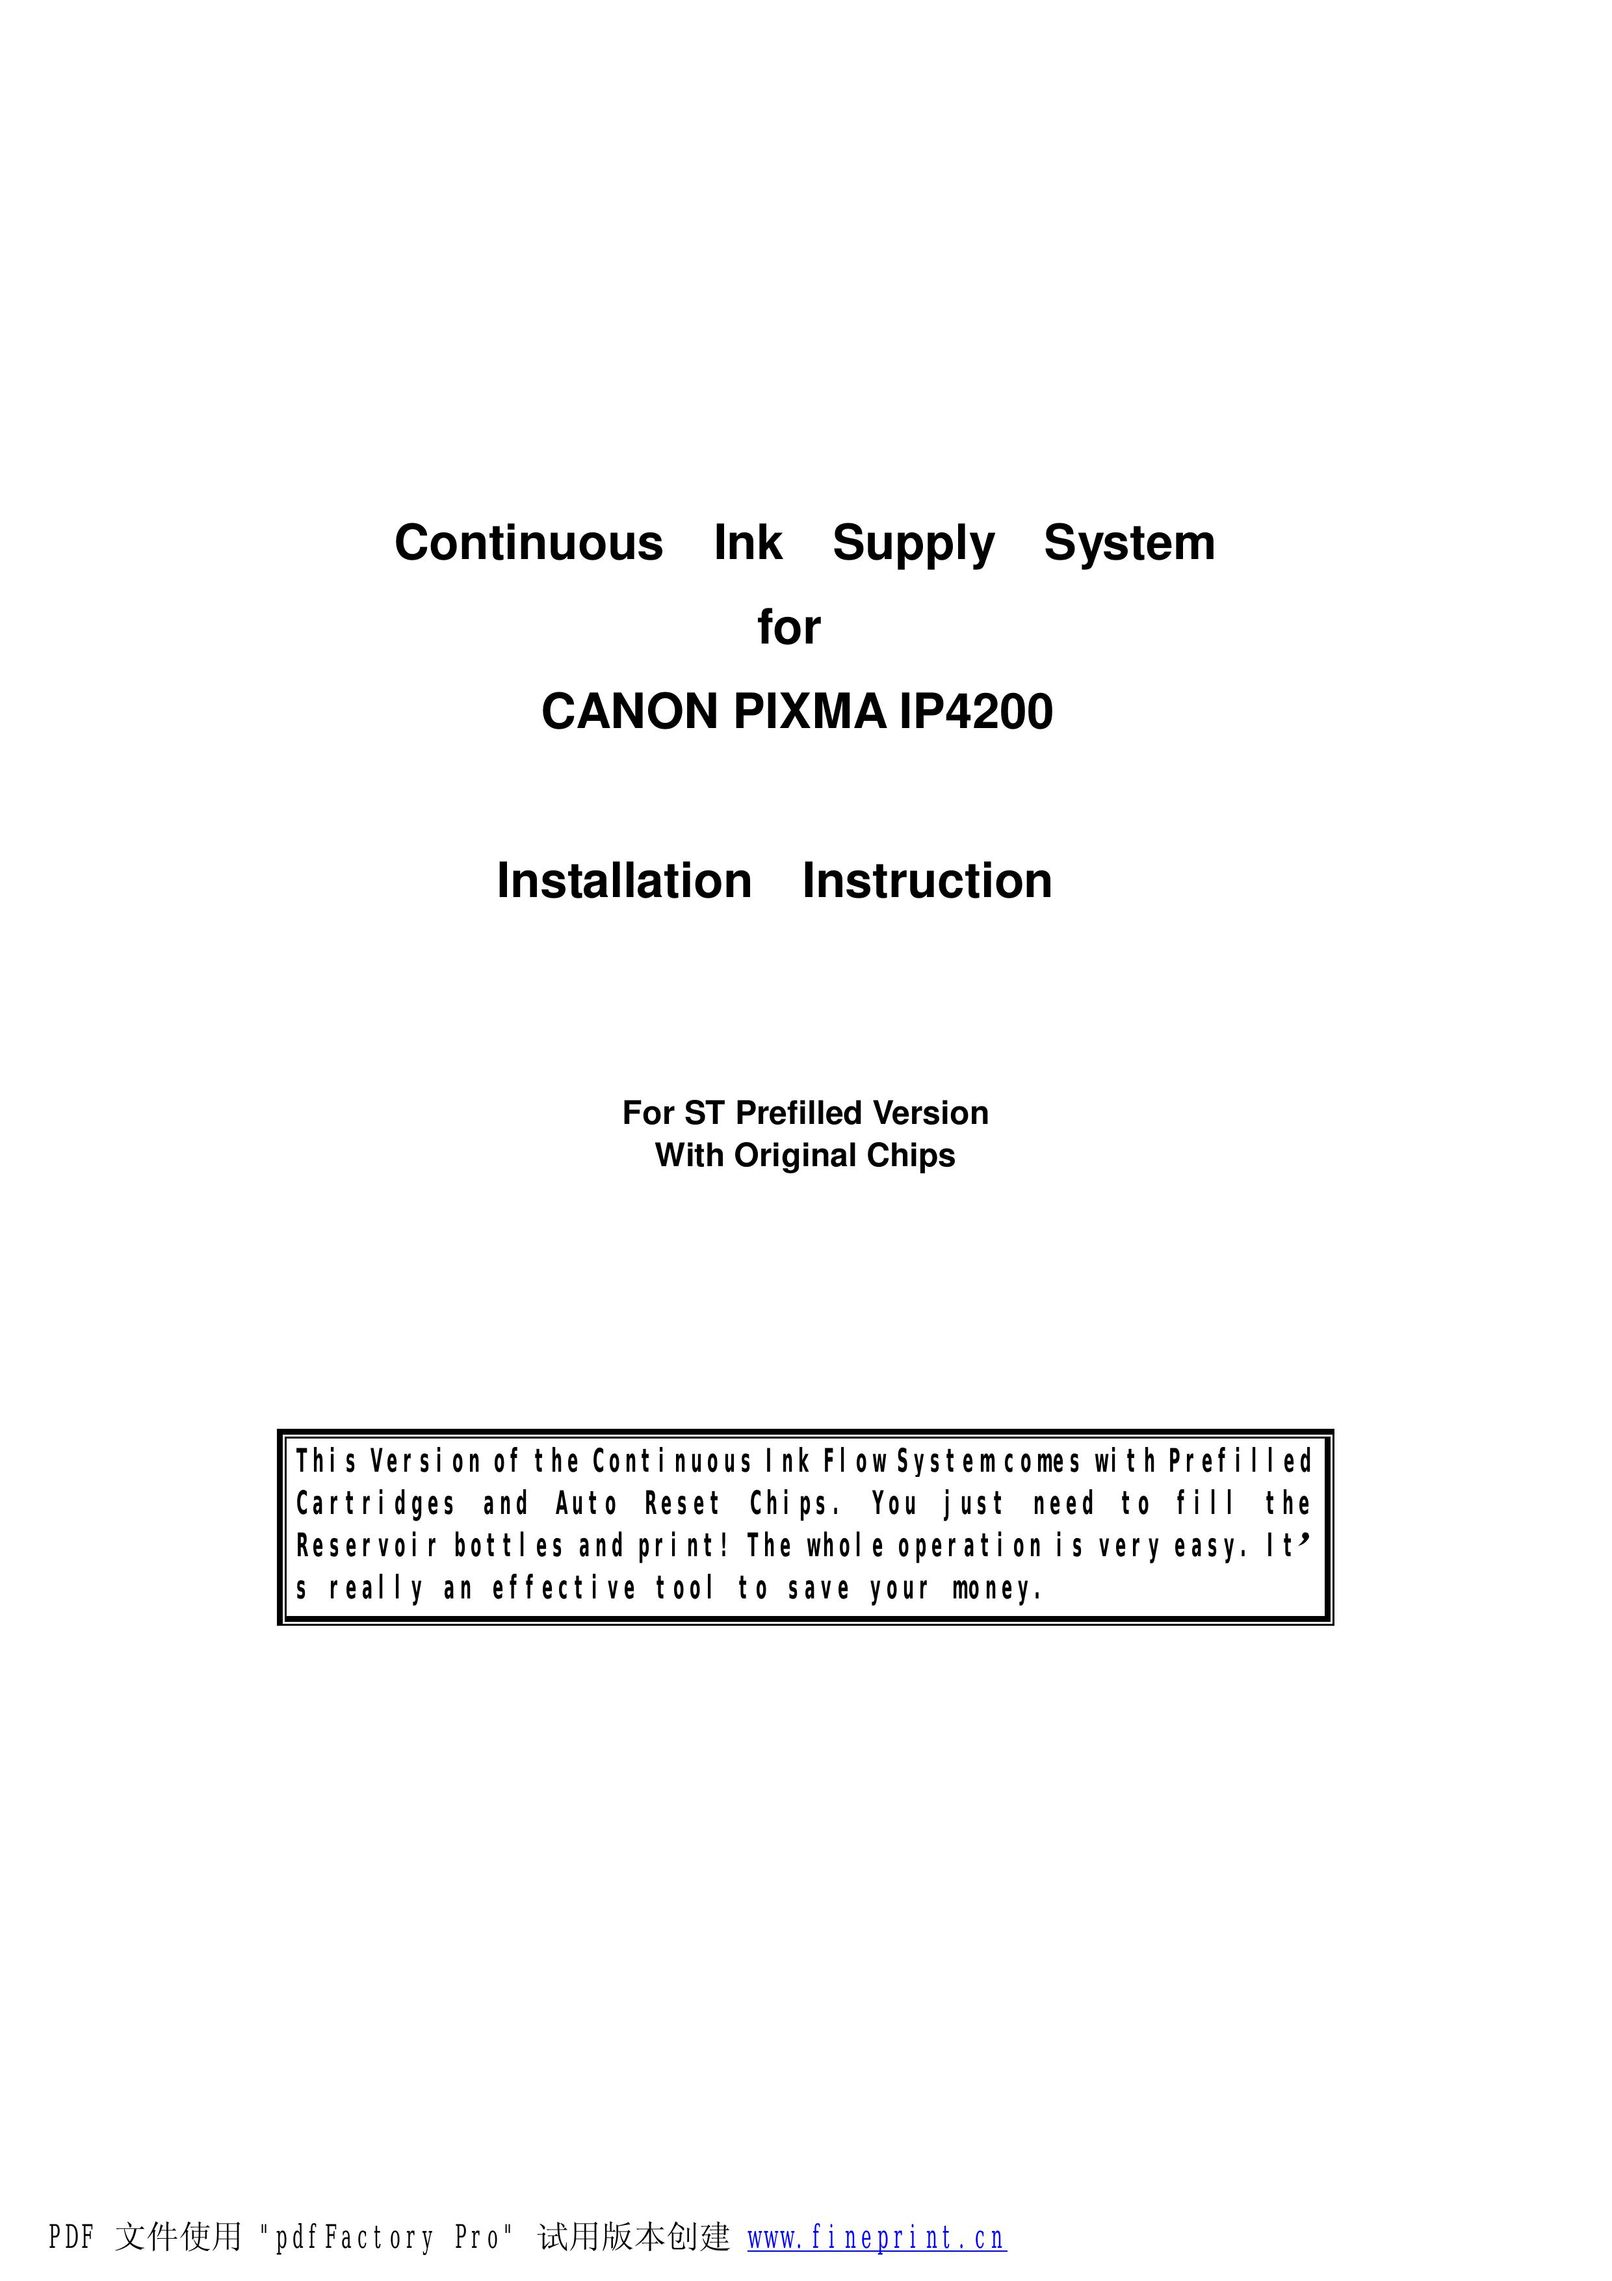 Canon IP4200 Printer Accessories User Manual